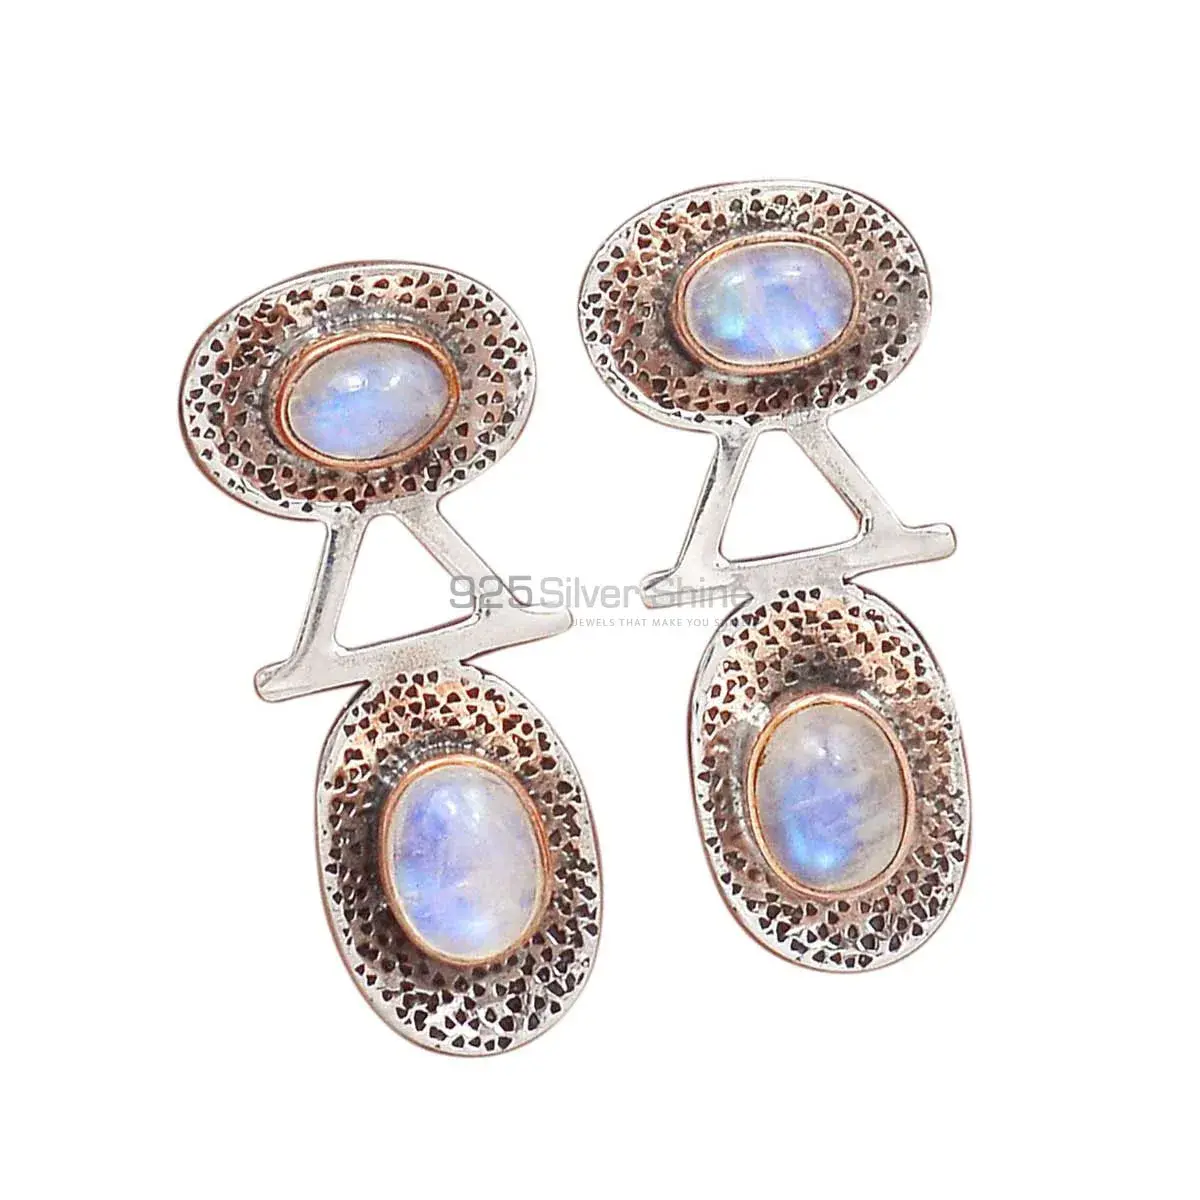 Beautiful 925 Sterling Silver Earrings In Rainbow Moonstone Jewelry 925SE2151